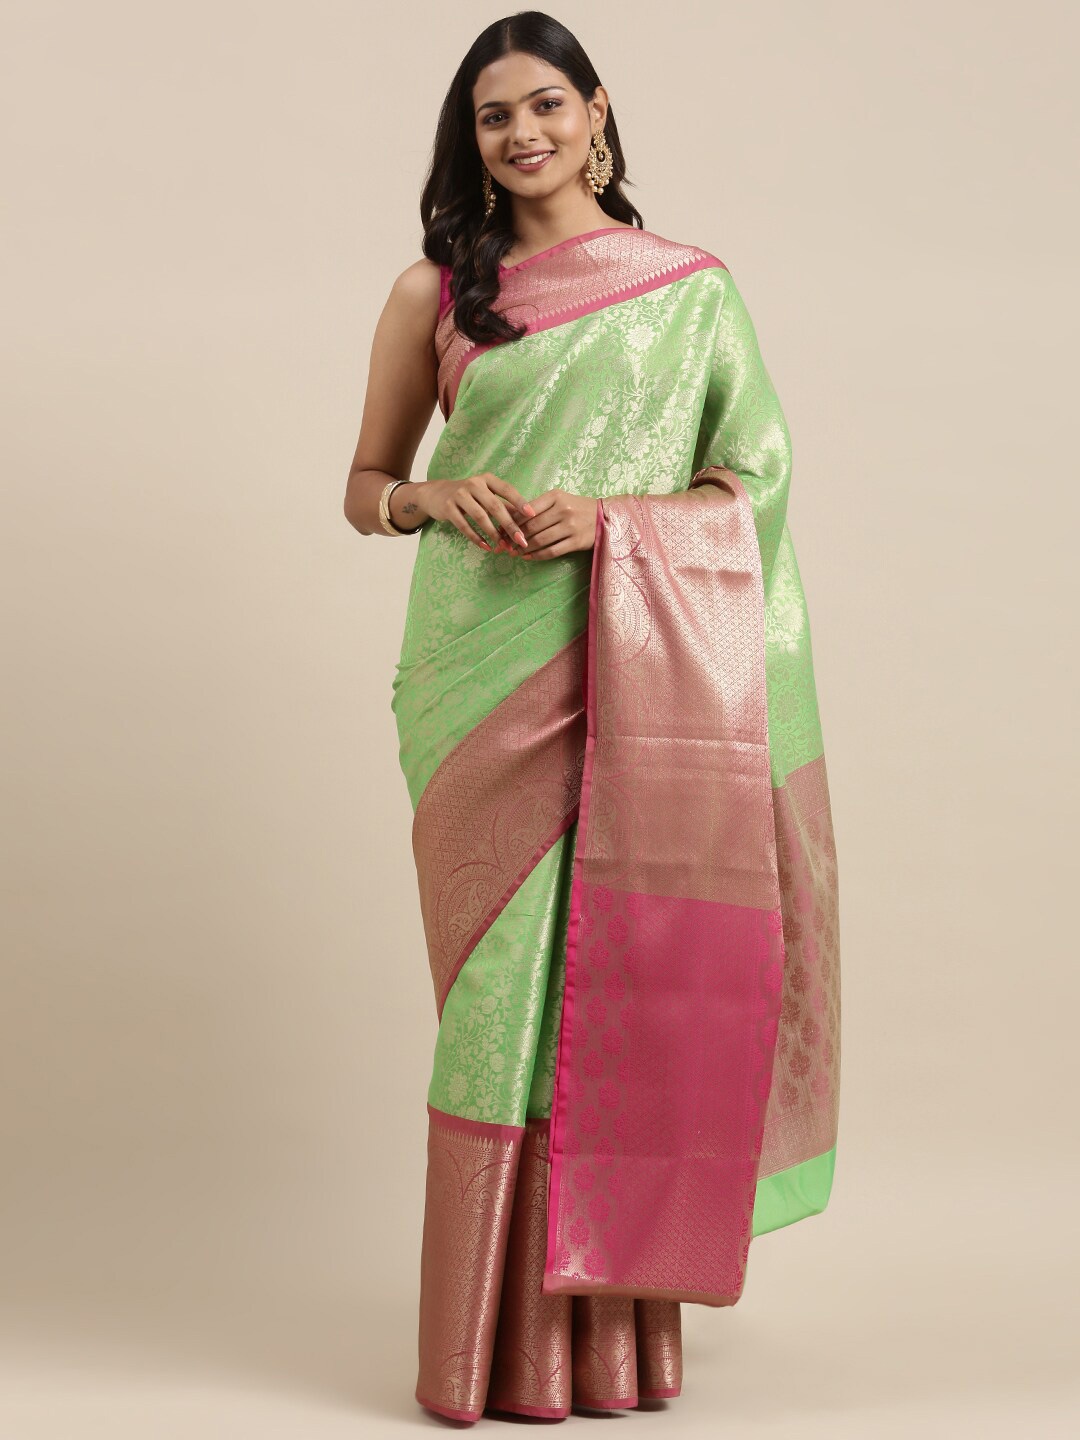 

PTIEPL Banarasi Silk Works Floral Woven Design Zari Brocade Banarasi Saree, Green